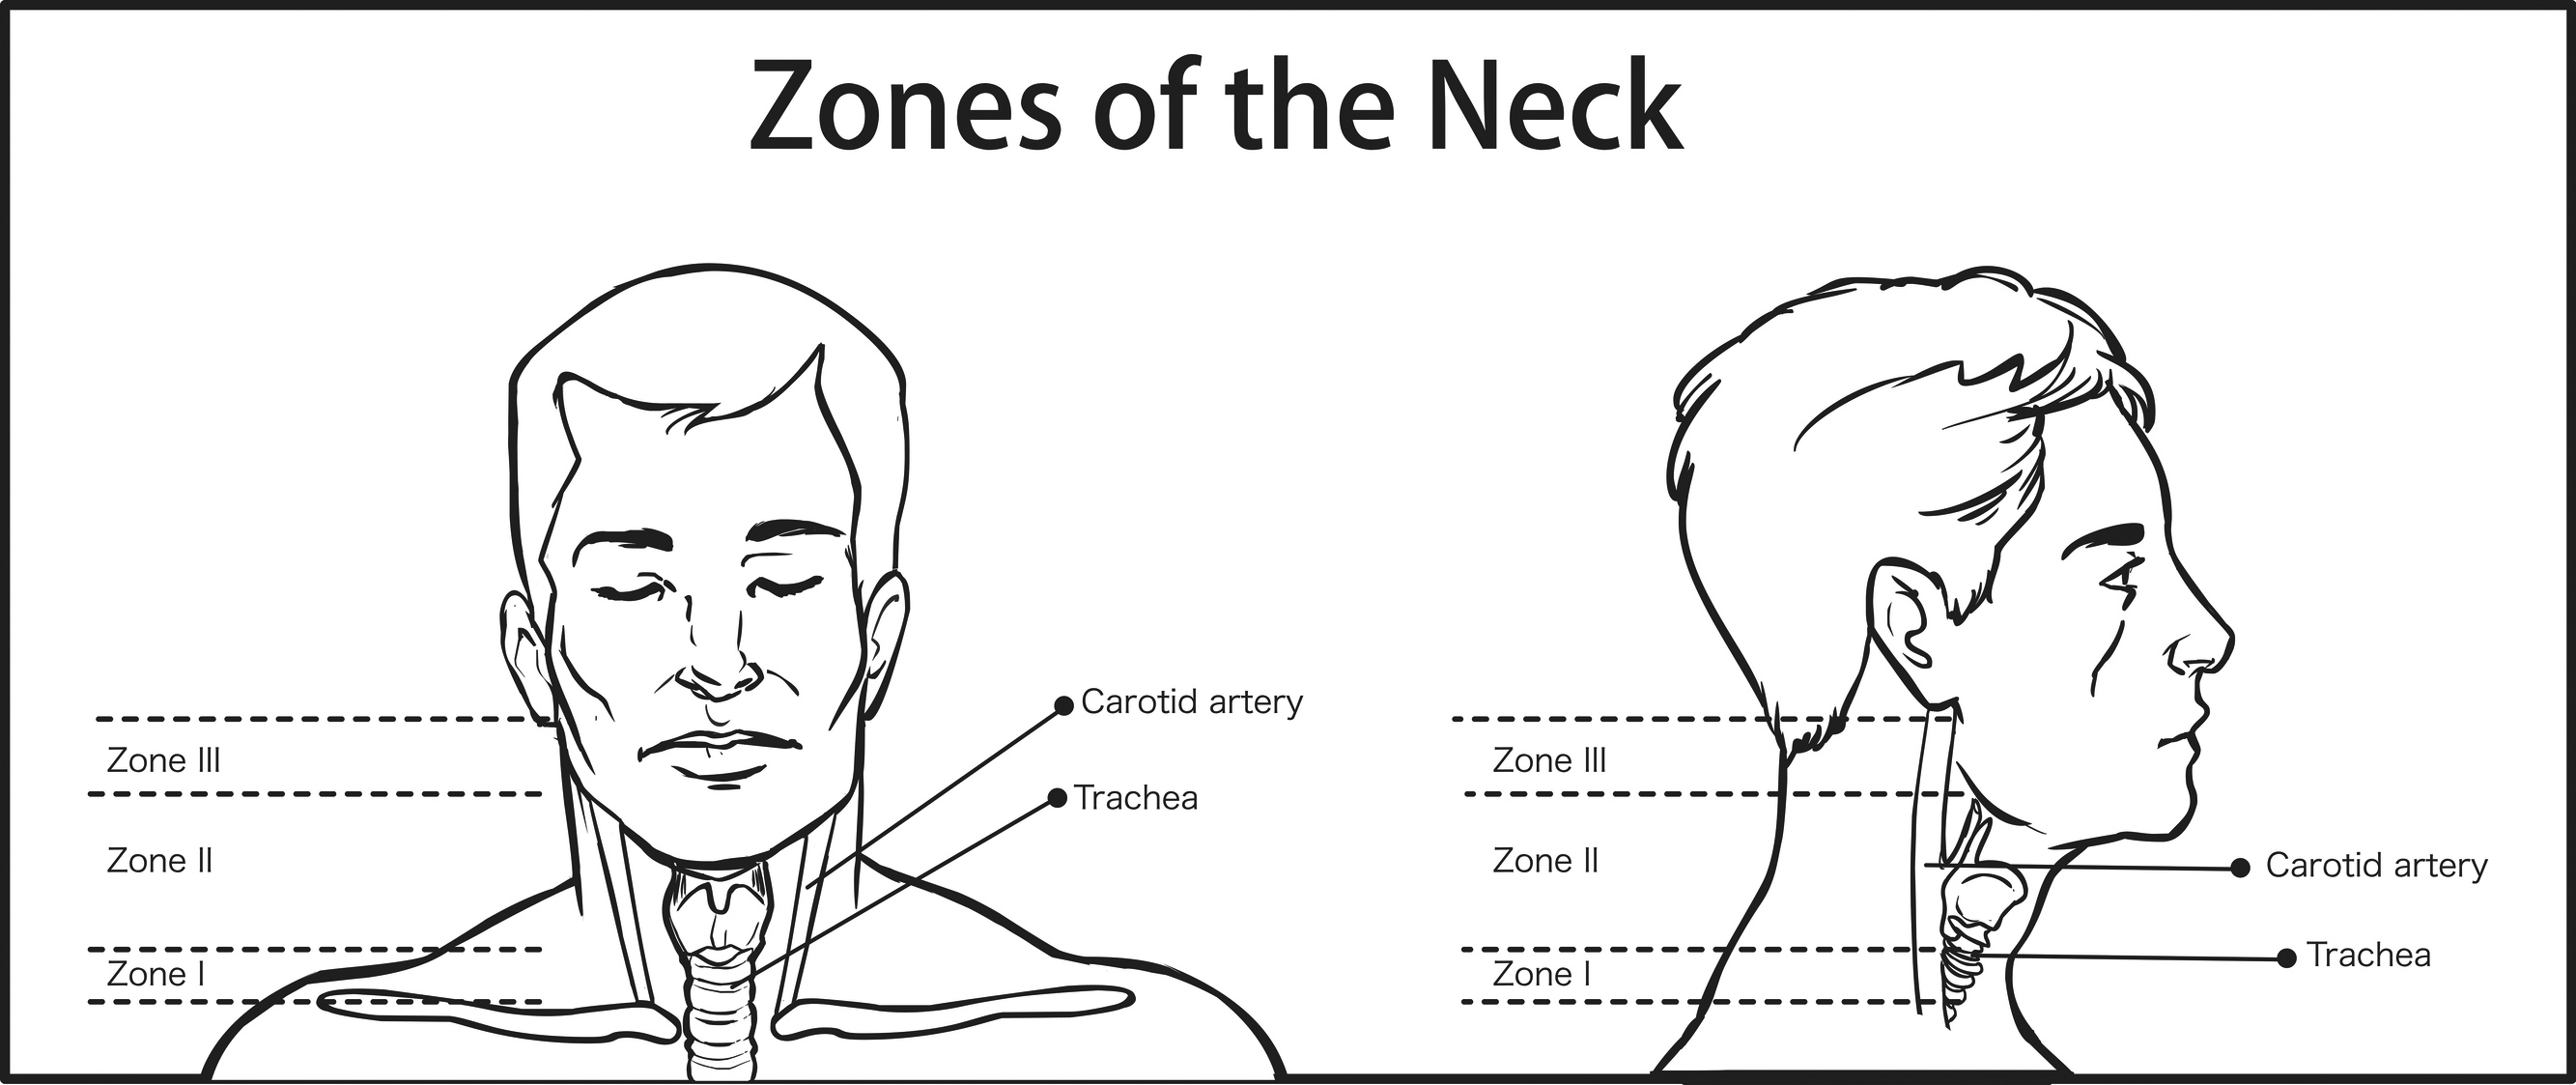 Zones of the neck